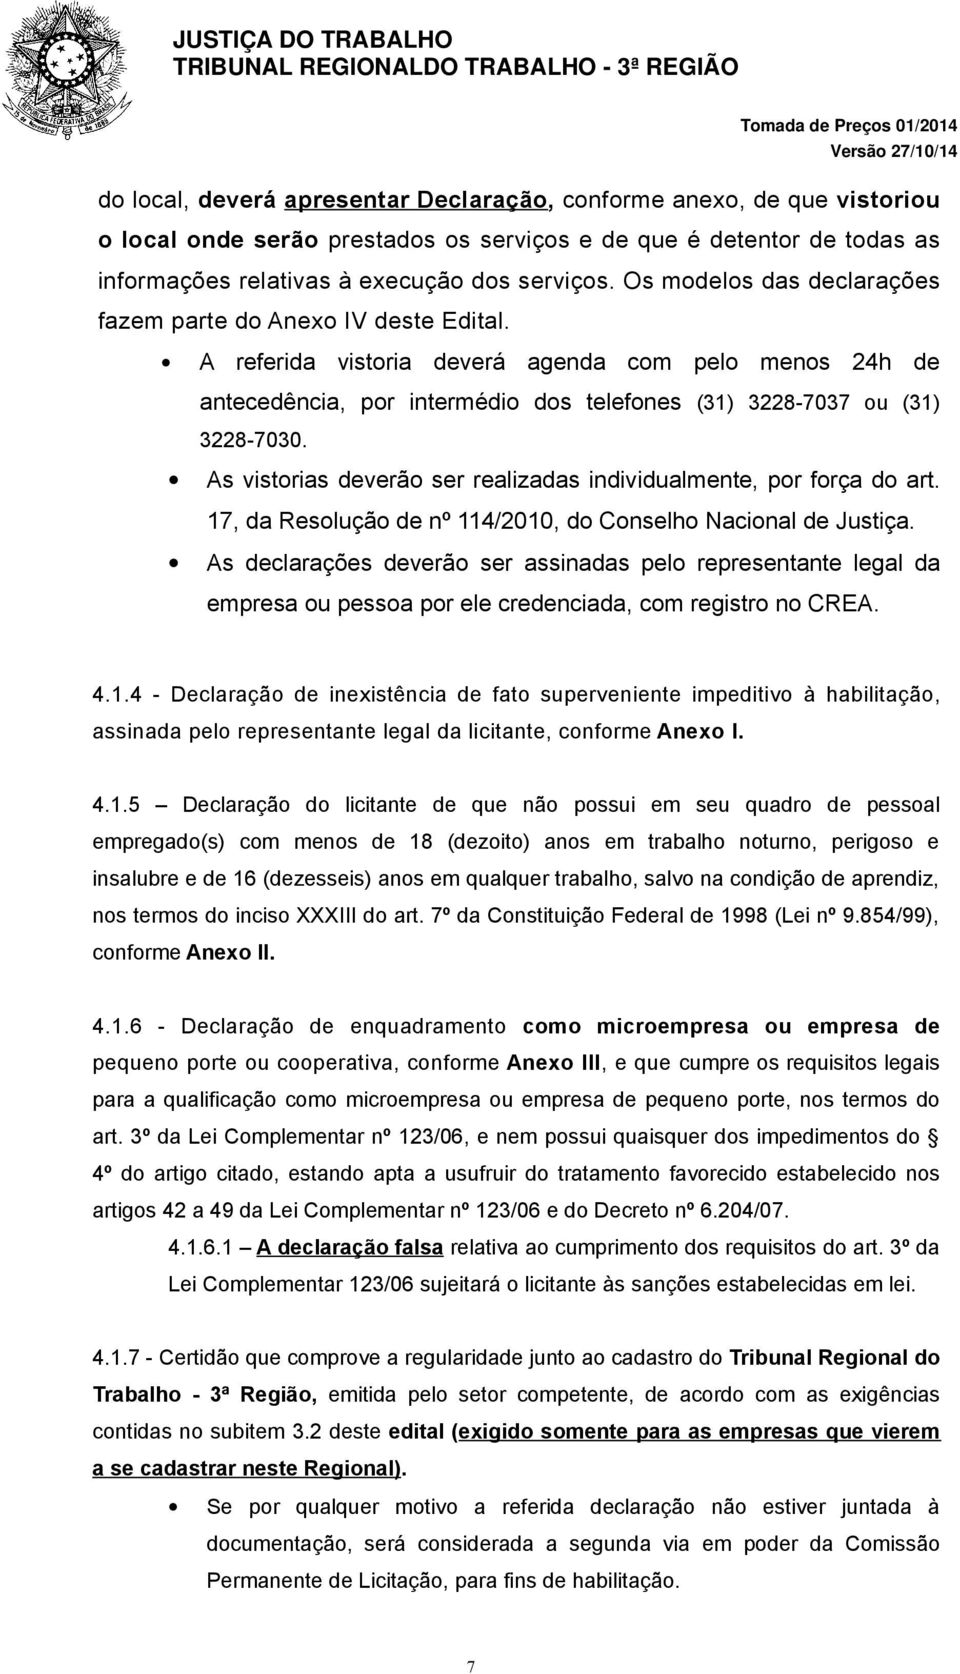 As vistorias deverão ser realizadas individualmente, por força do art. 17, da Resolução de nº 114/2010, do Conselho Nacional de Justiça.